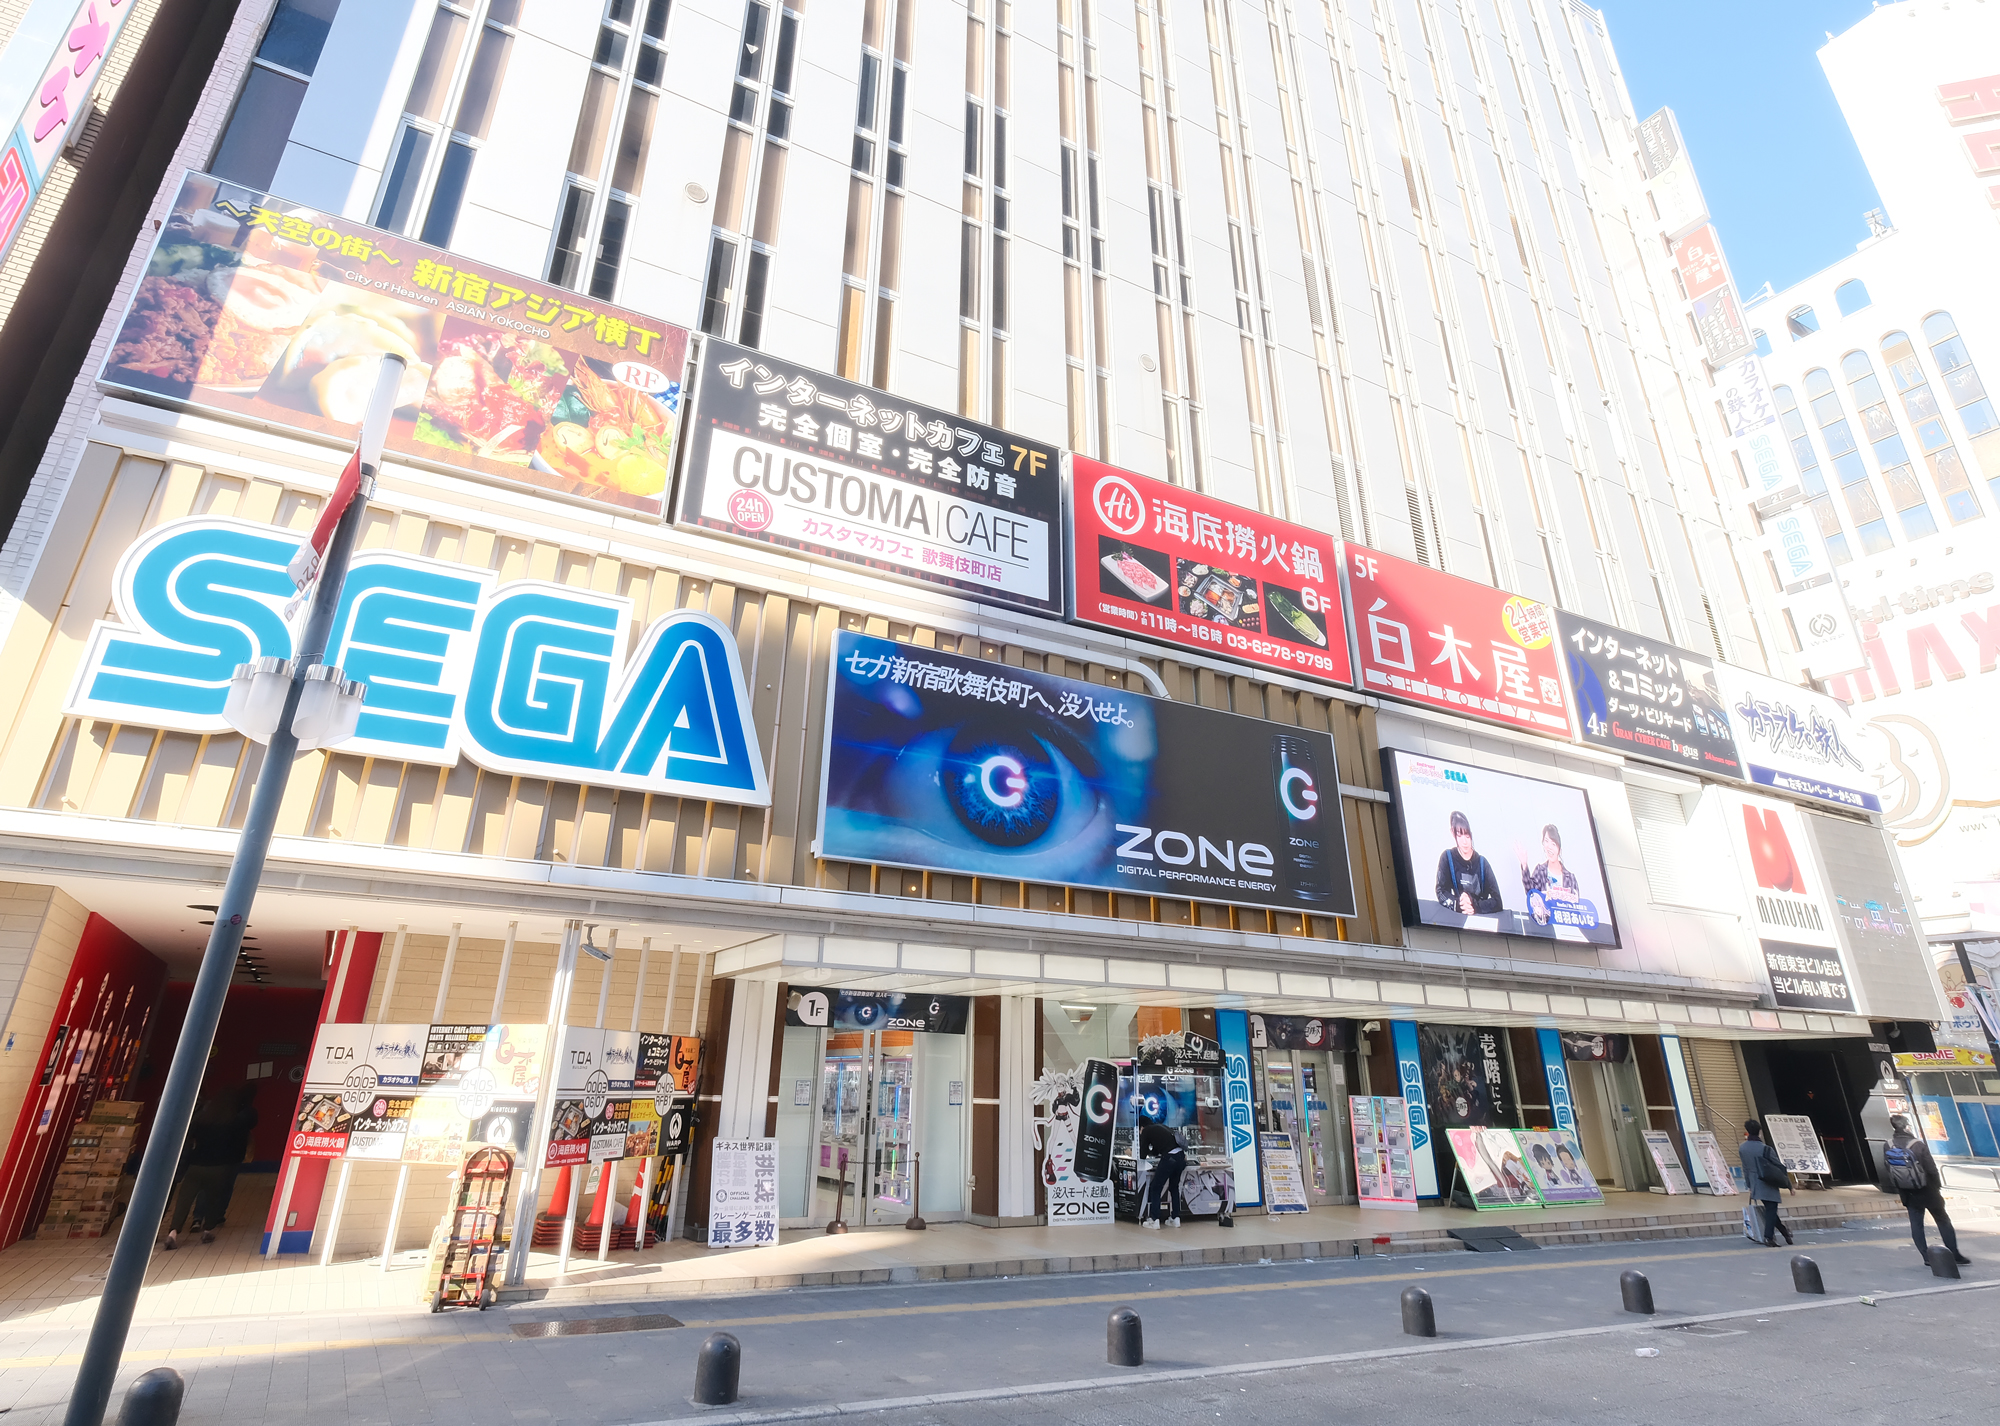 クレーンゲーム機設置台数 世界一 に挑戦 セガ新宿歌舞伎町 リニューアルオープンのお知らせ 株式会社genda Gigo Entertainmentのプレスリリース